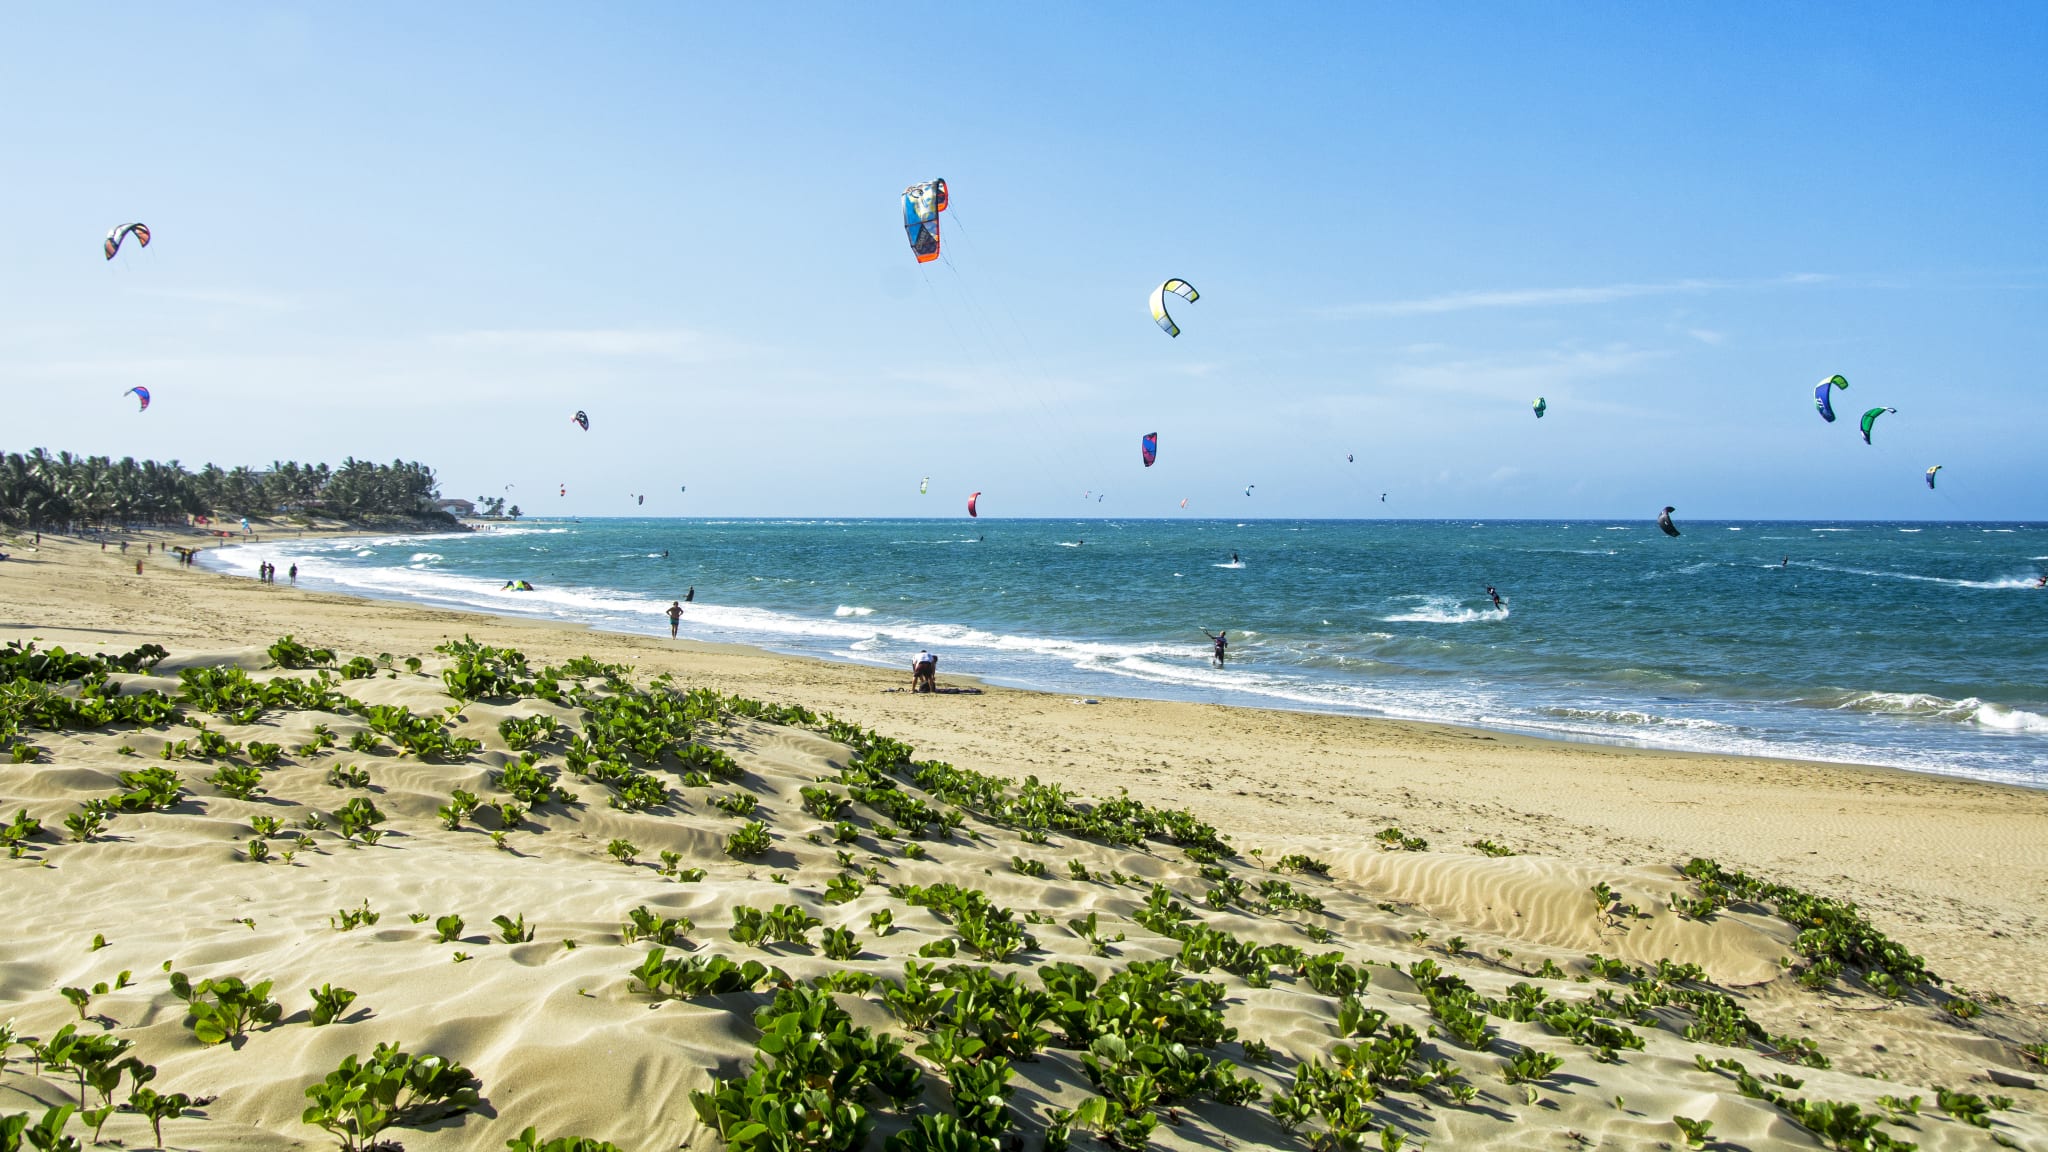 Kiteboarding am Strand von Cabarete, Dominikanische Republik